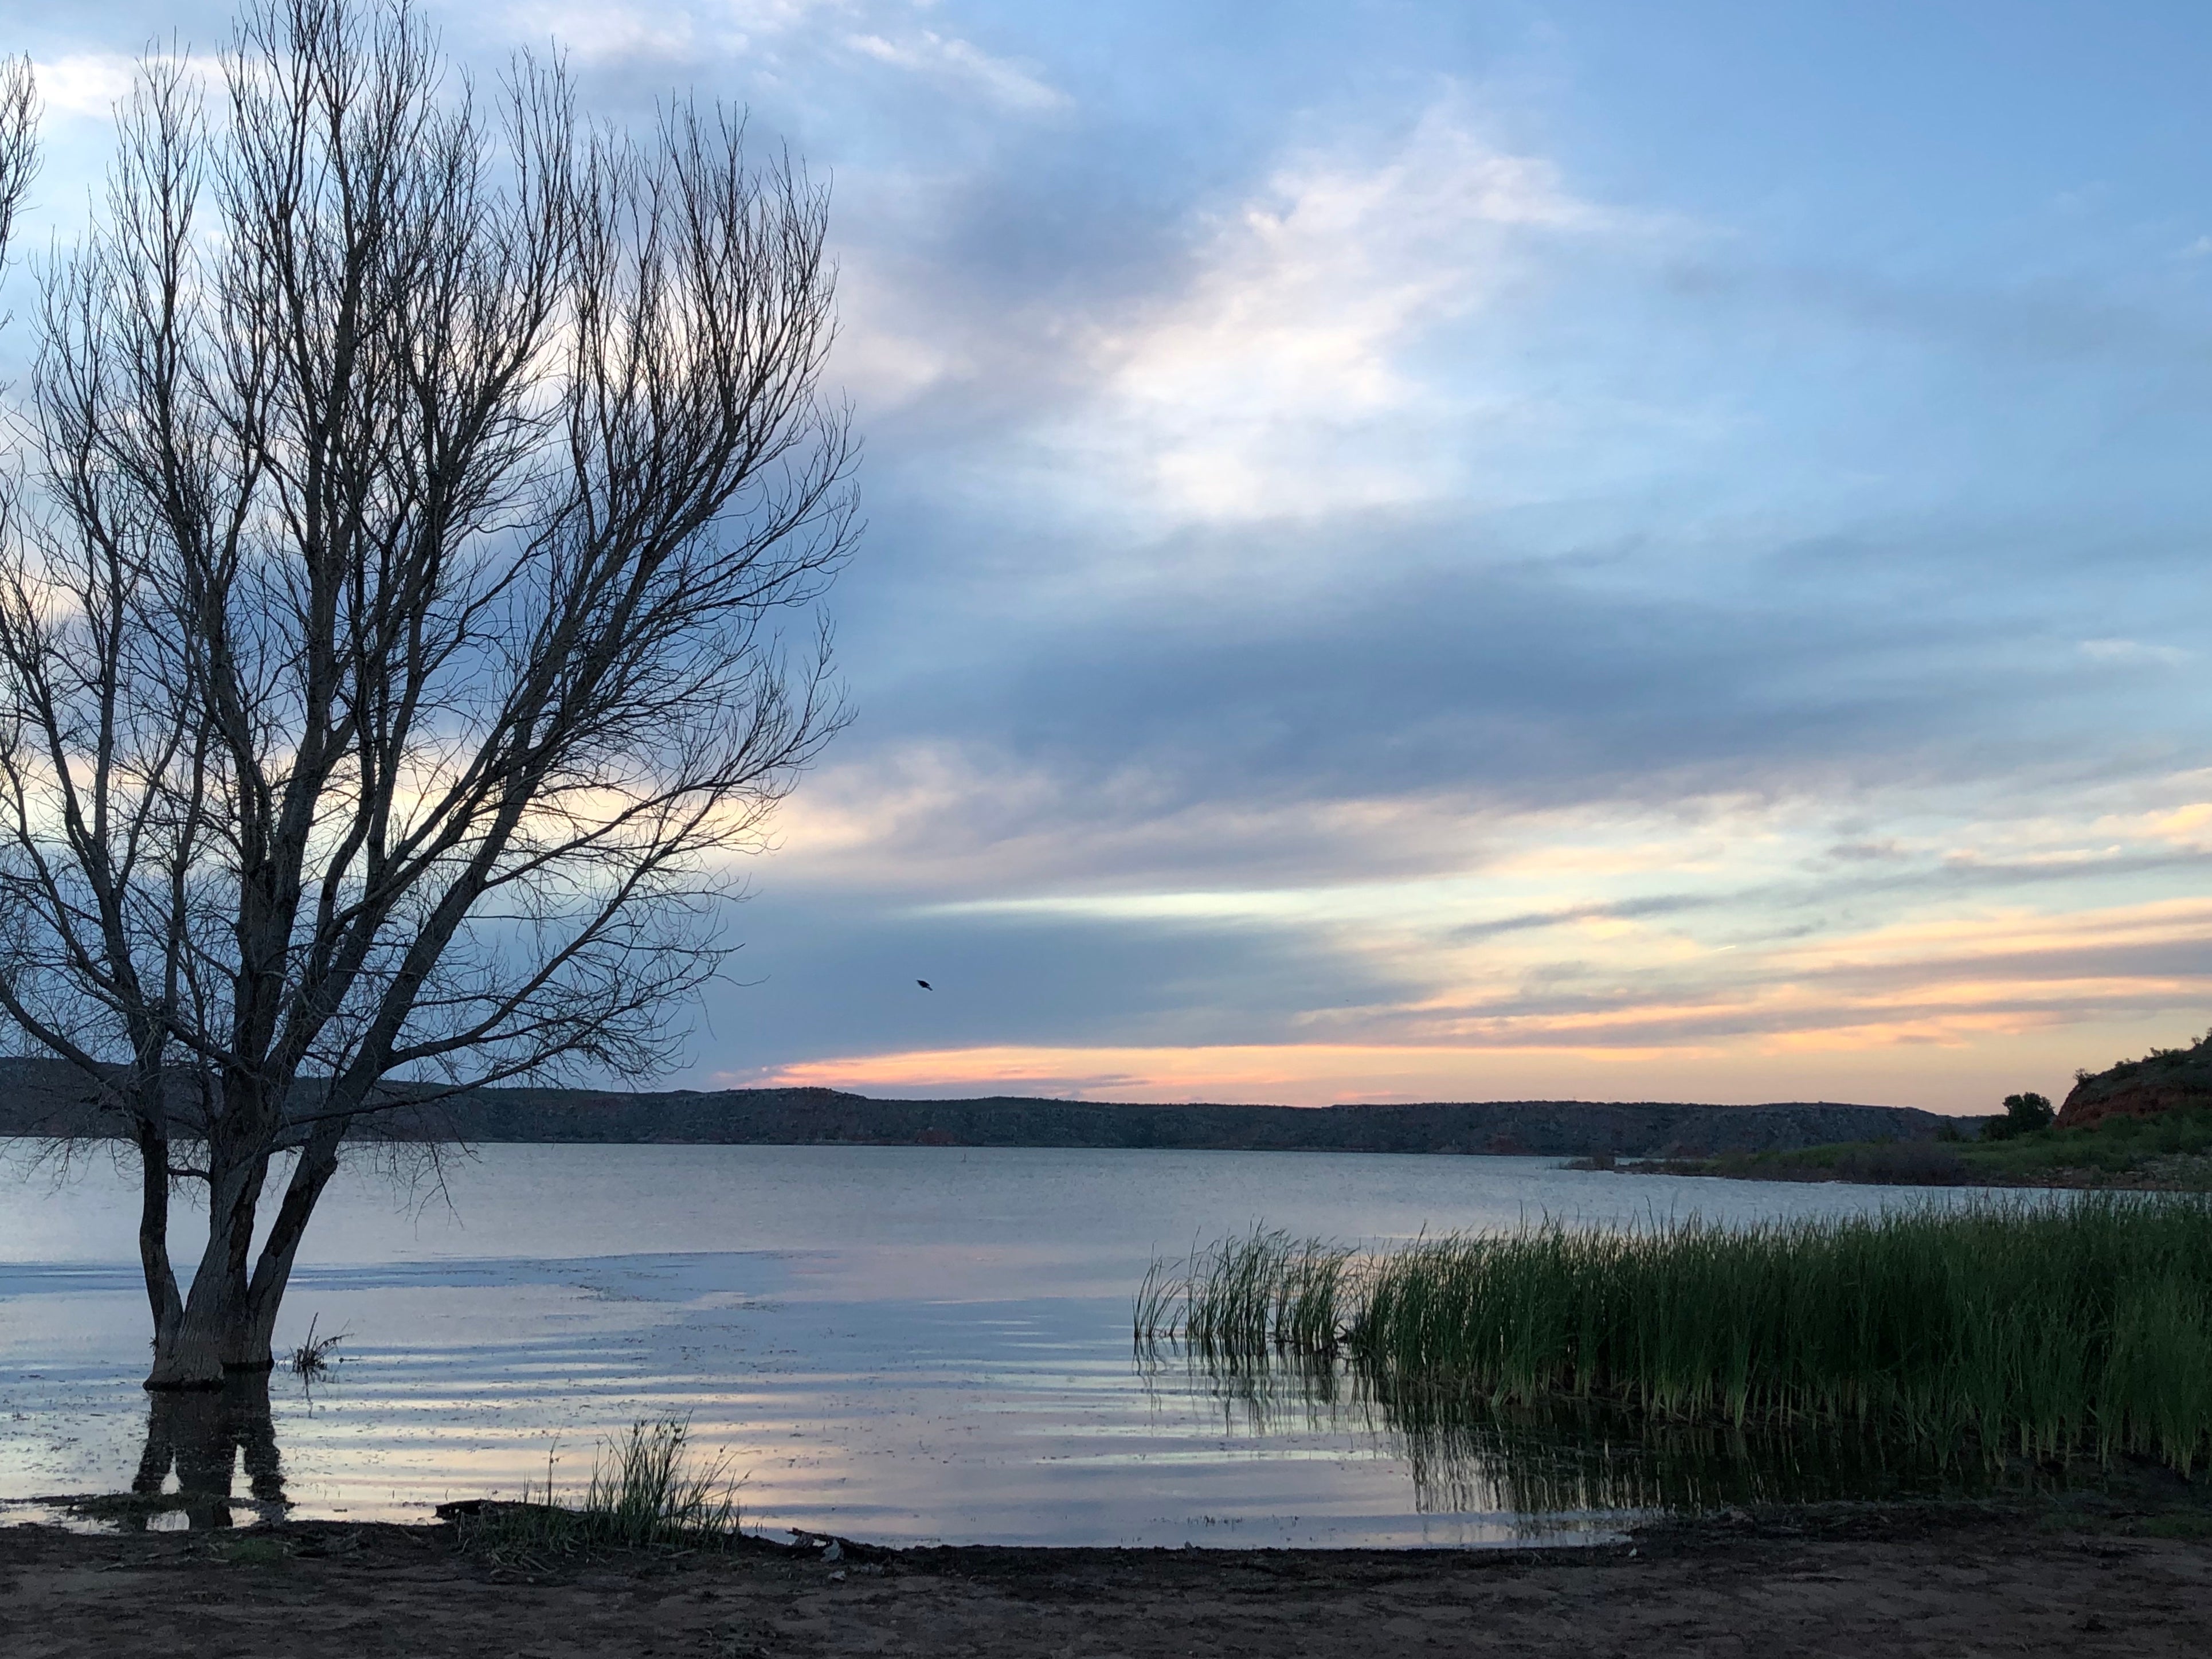 Sunset at Lake Meredith